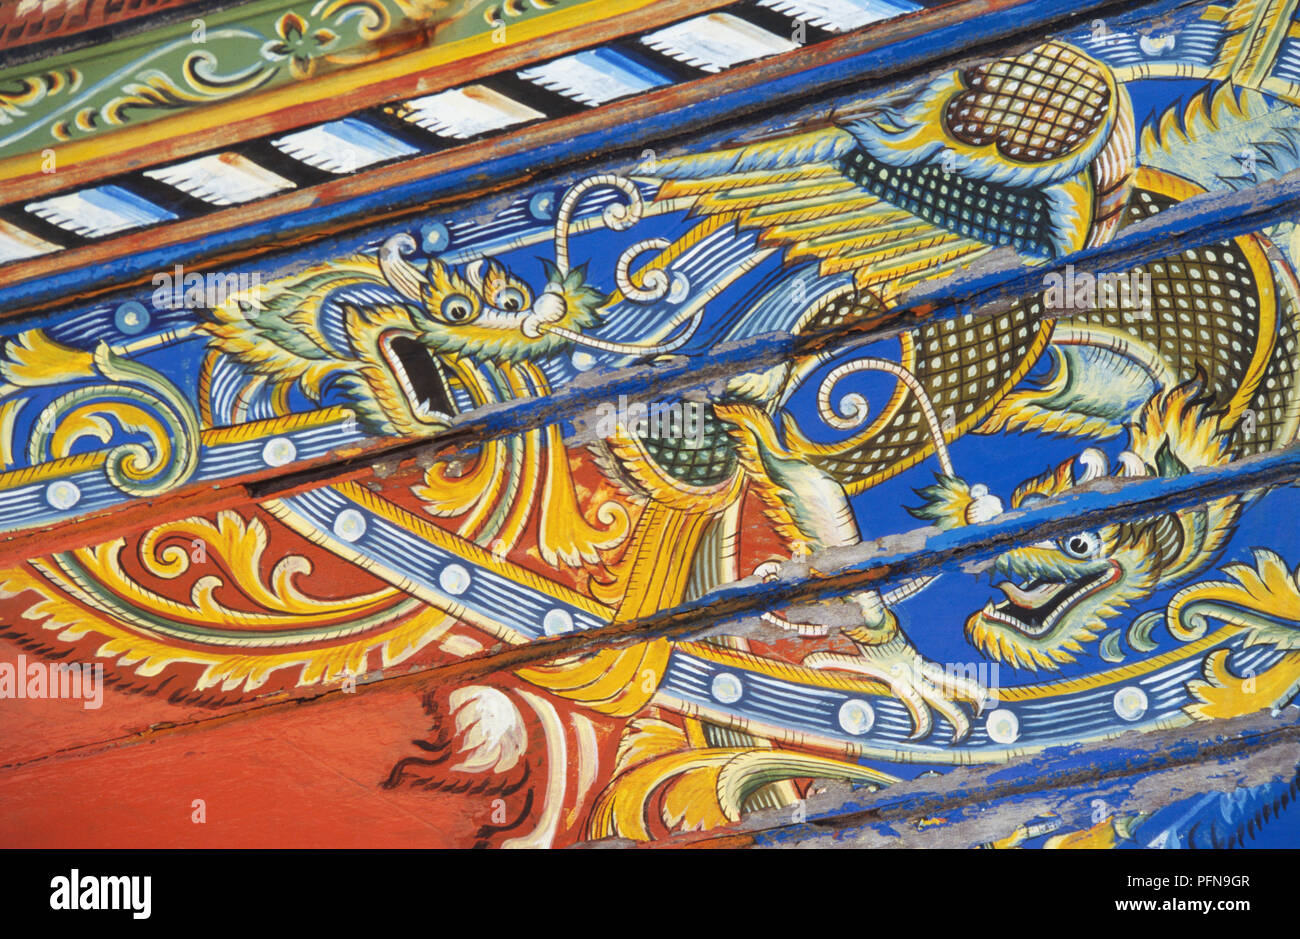 La Thaïlande, peint de façon complexe la lutte contre les dragons sur le côté du bateau korlae décorées. Banque D'Images